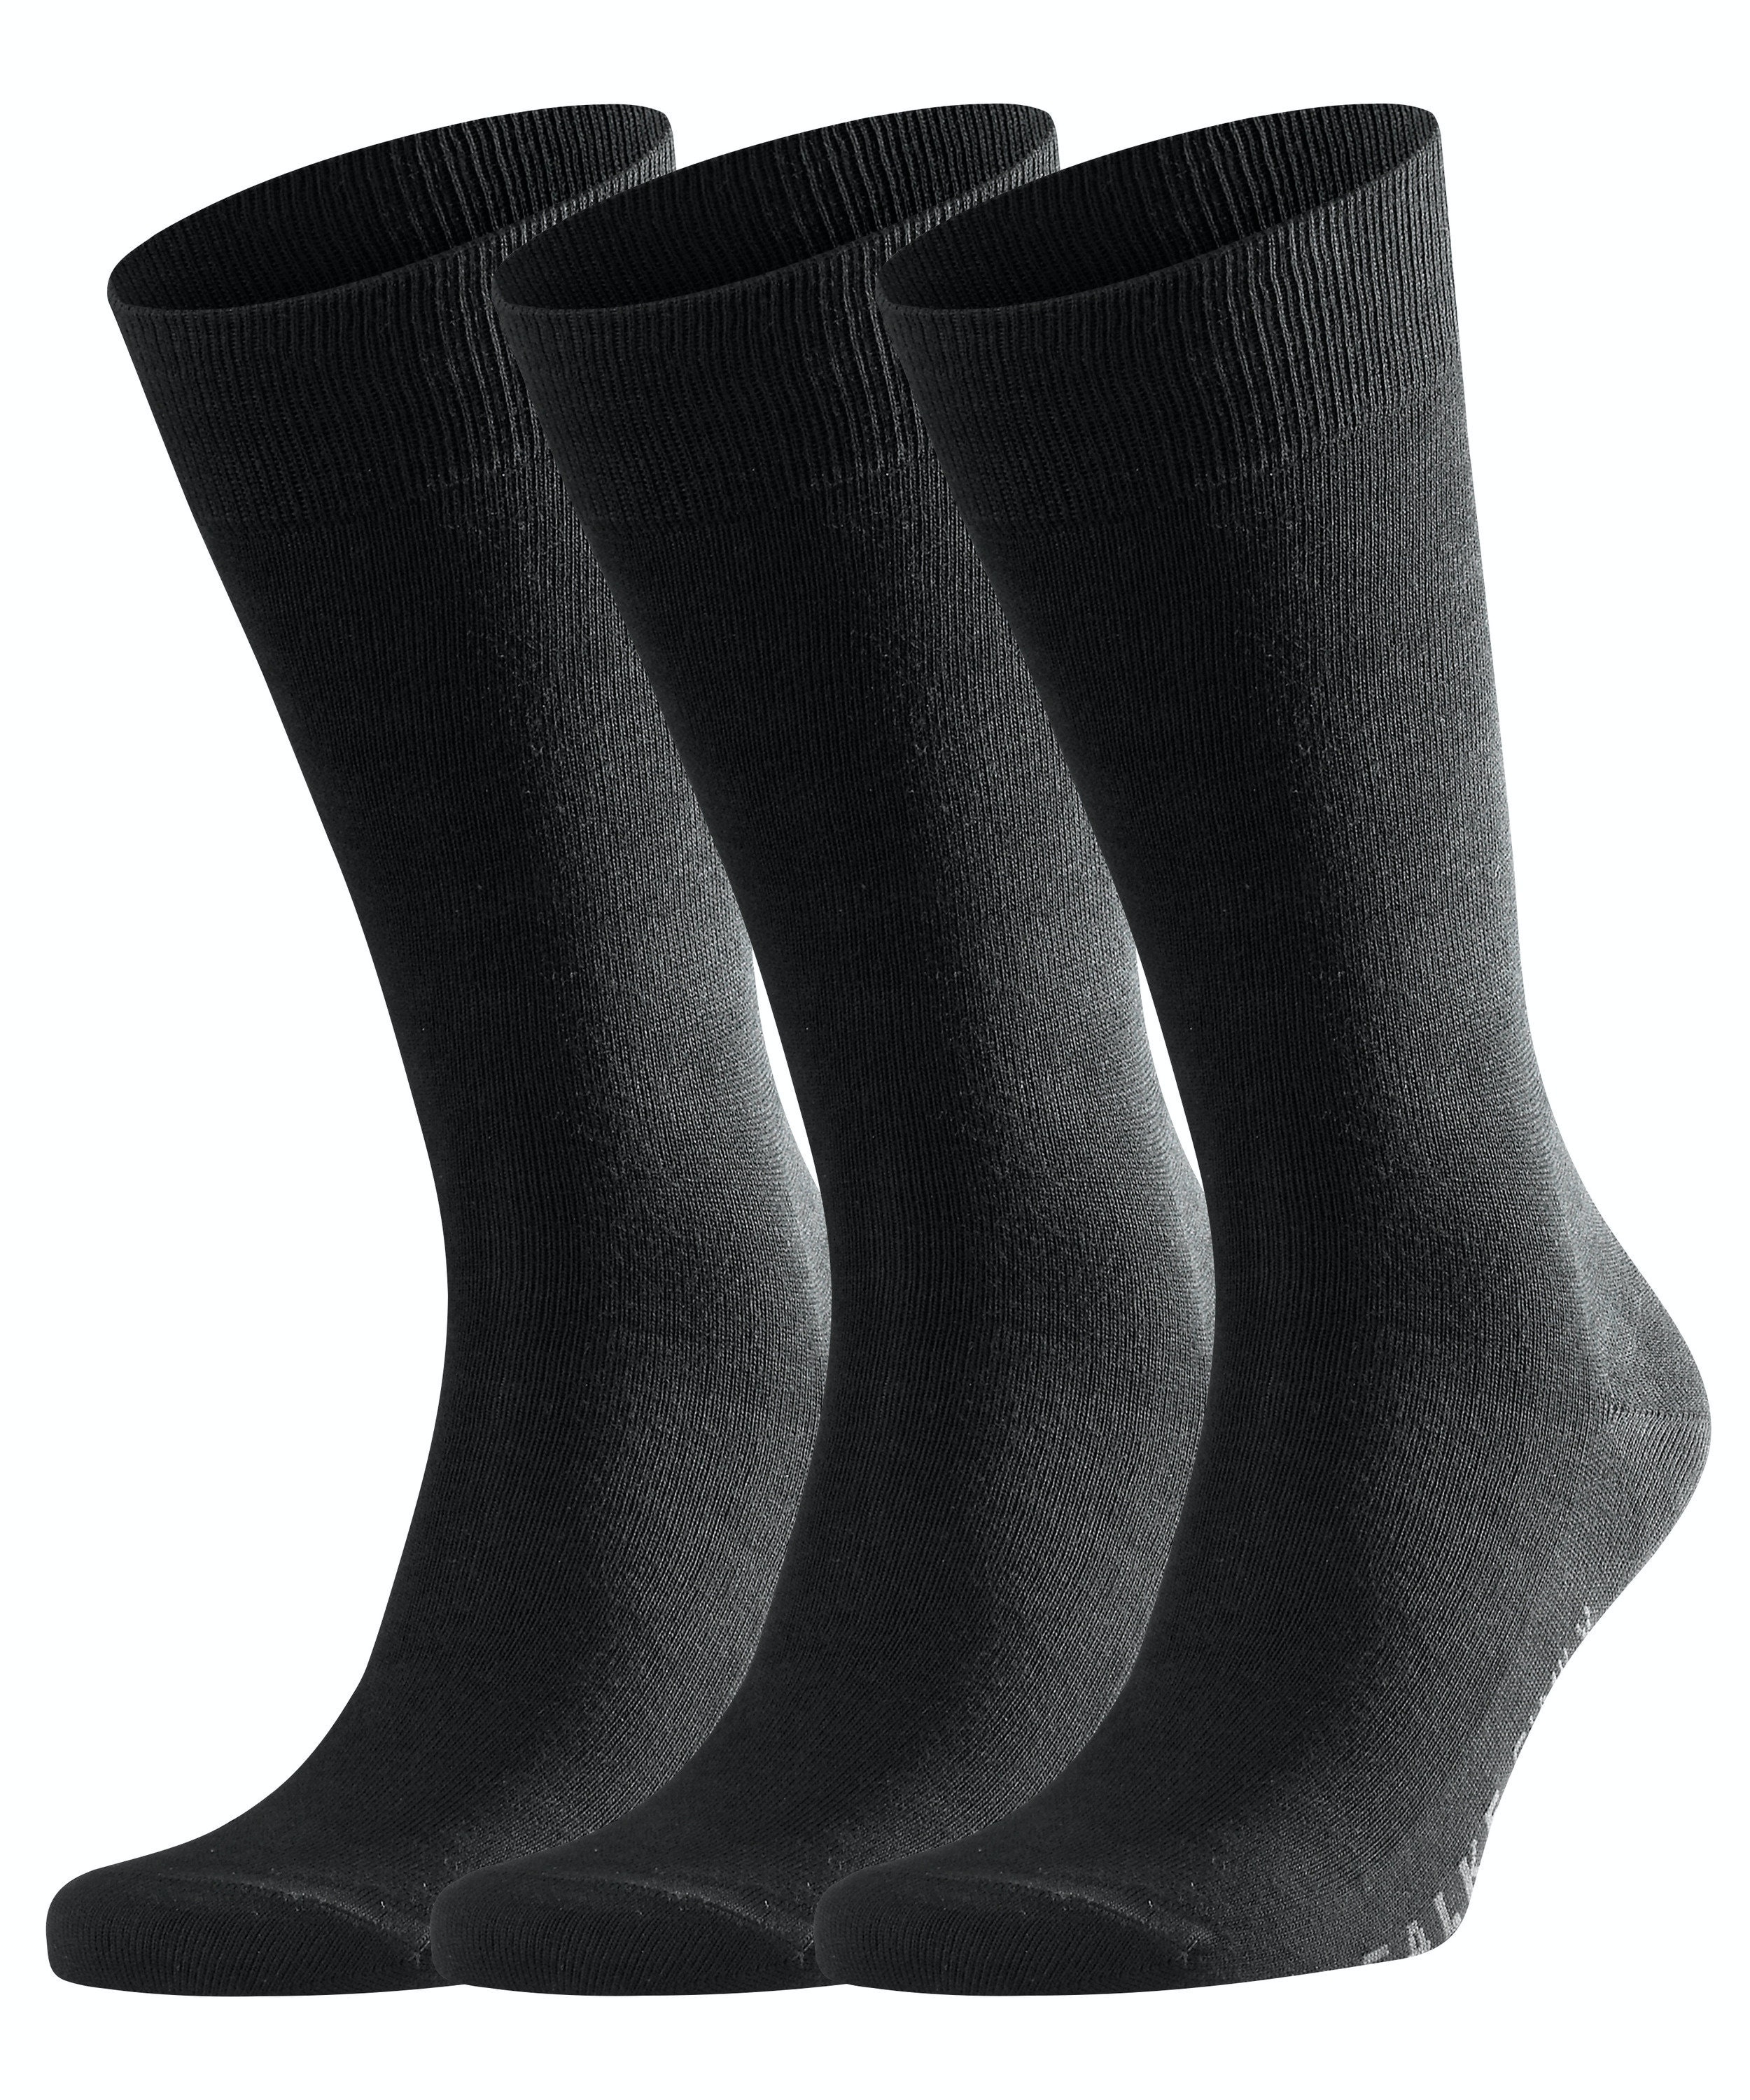 FALKE Family 3-Pack Damen Socken BLACK